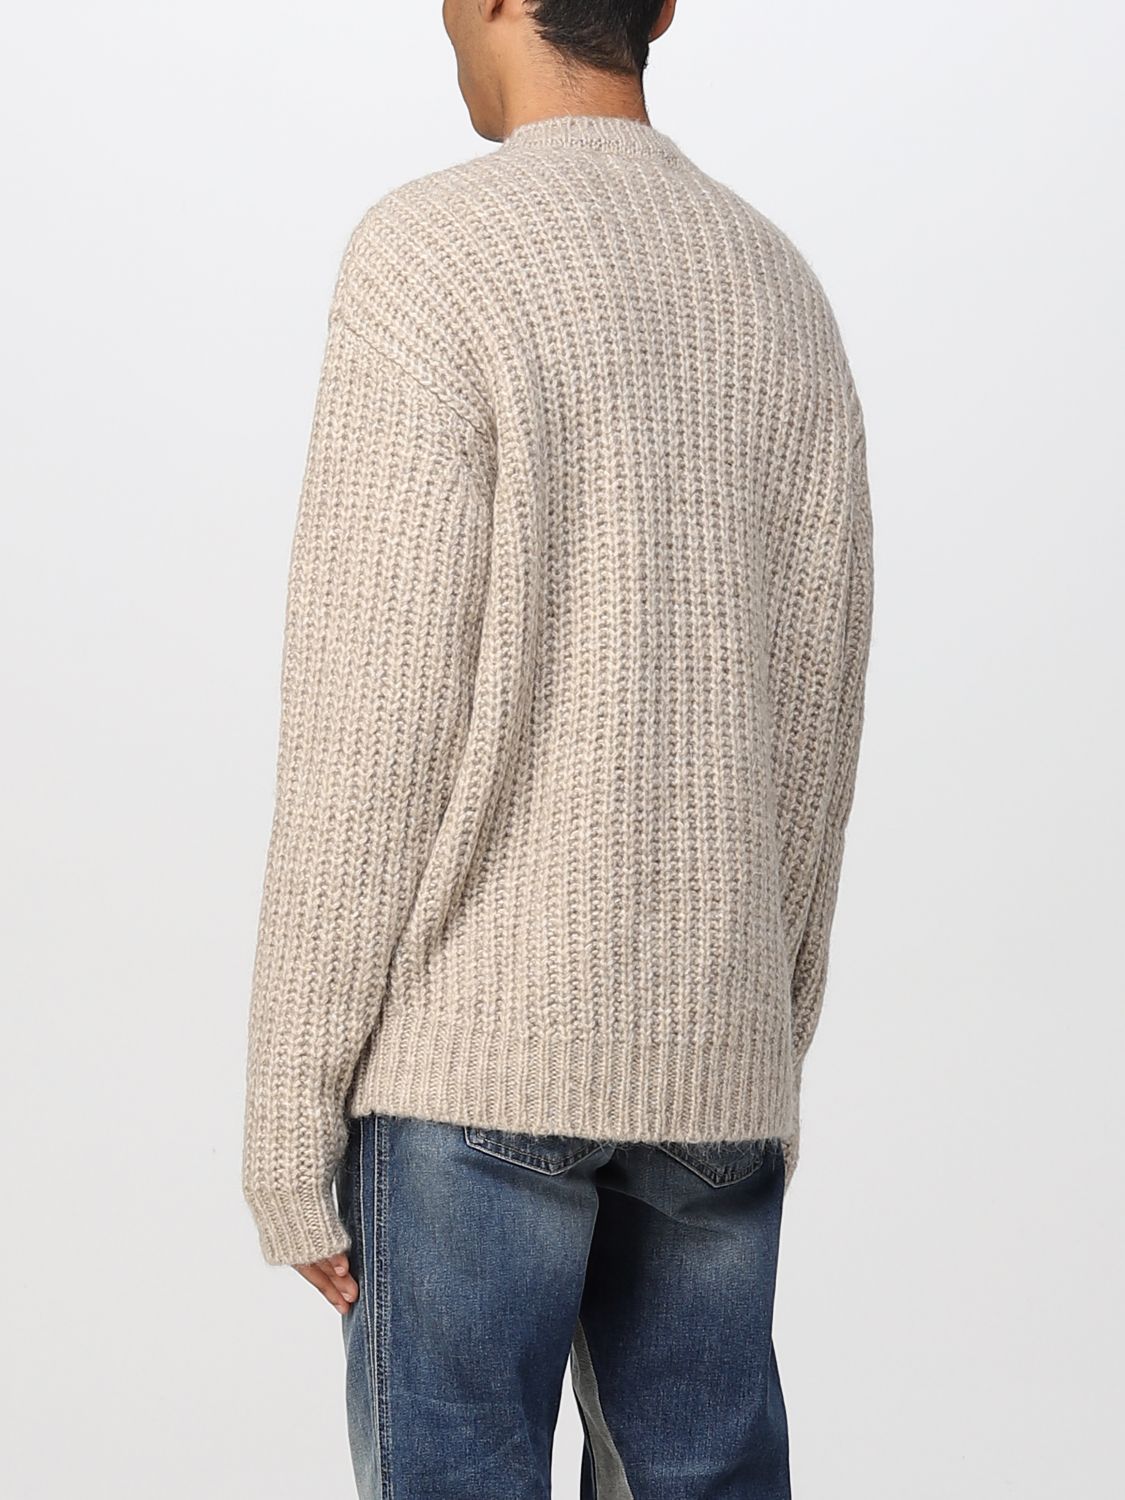 Represent セーター メンズ ベージュ Giglio Comオンラインのrepresent セーター M063